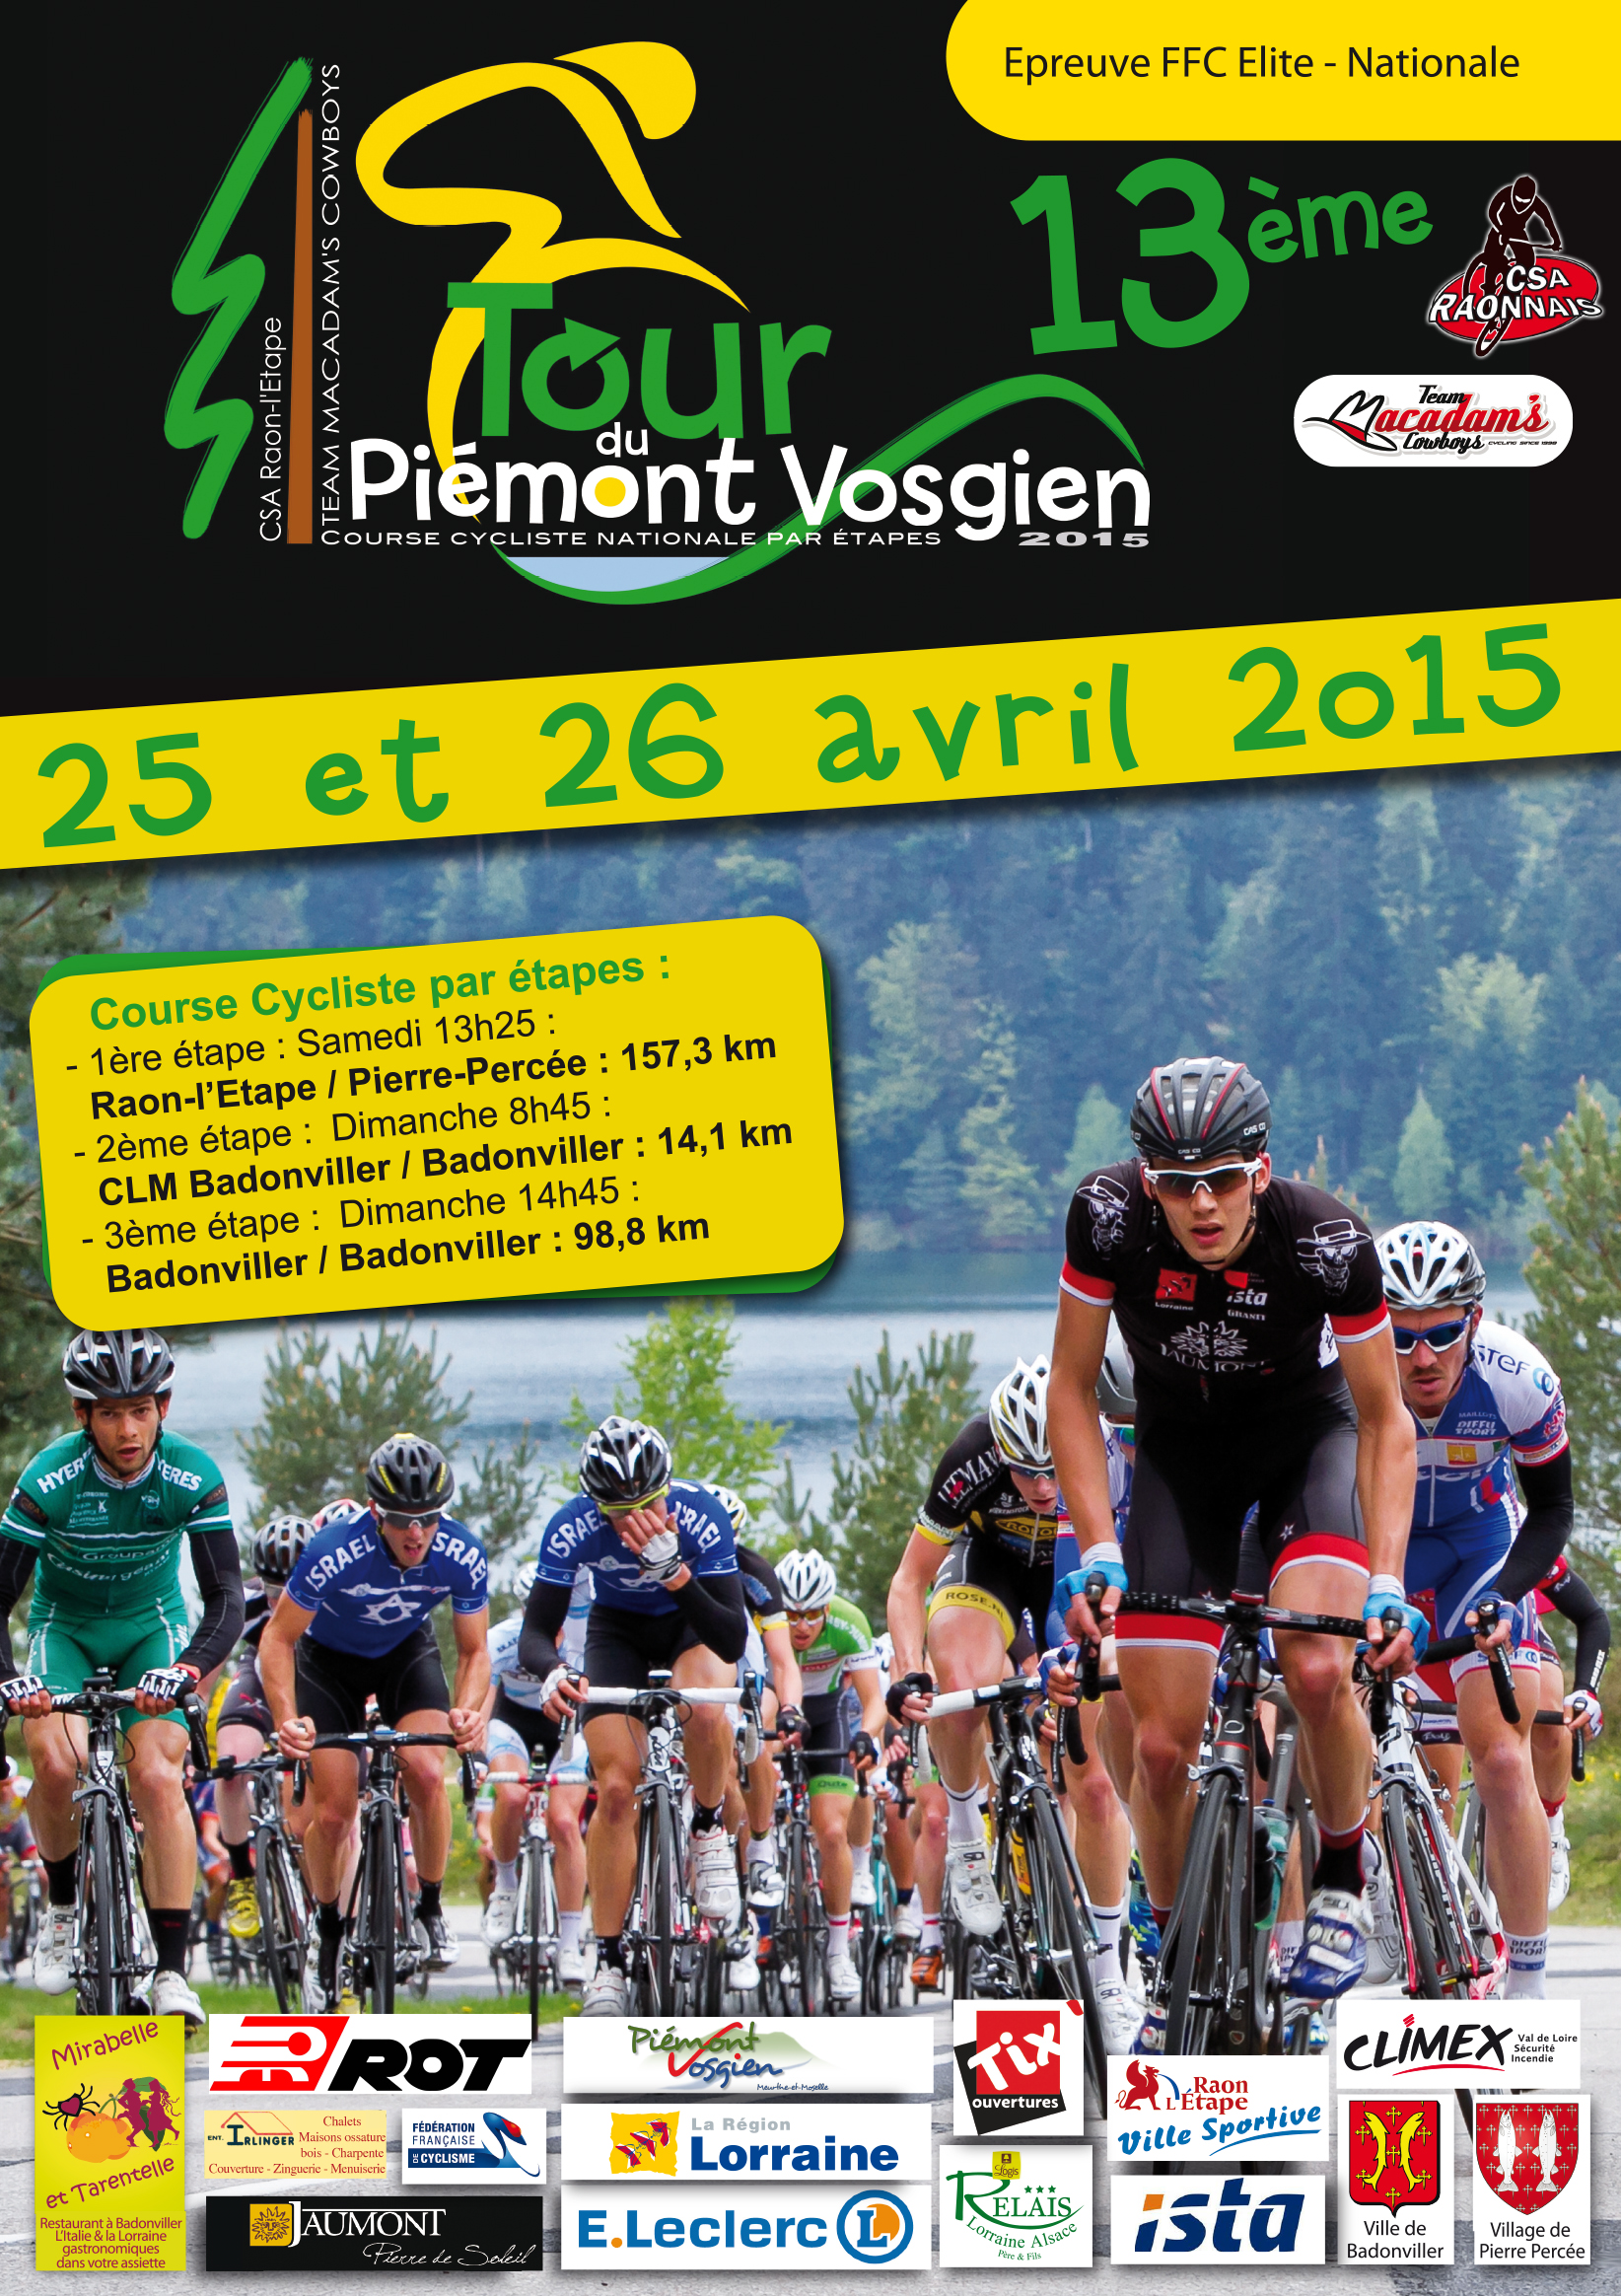 La liste des Engagés pour le 13ème Tour du Piémont Vosgien des 25 et 26 avril 2015